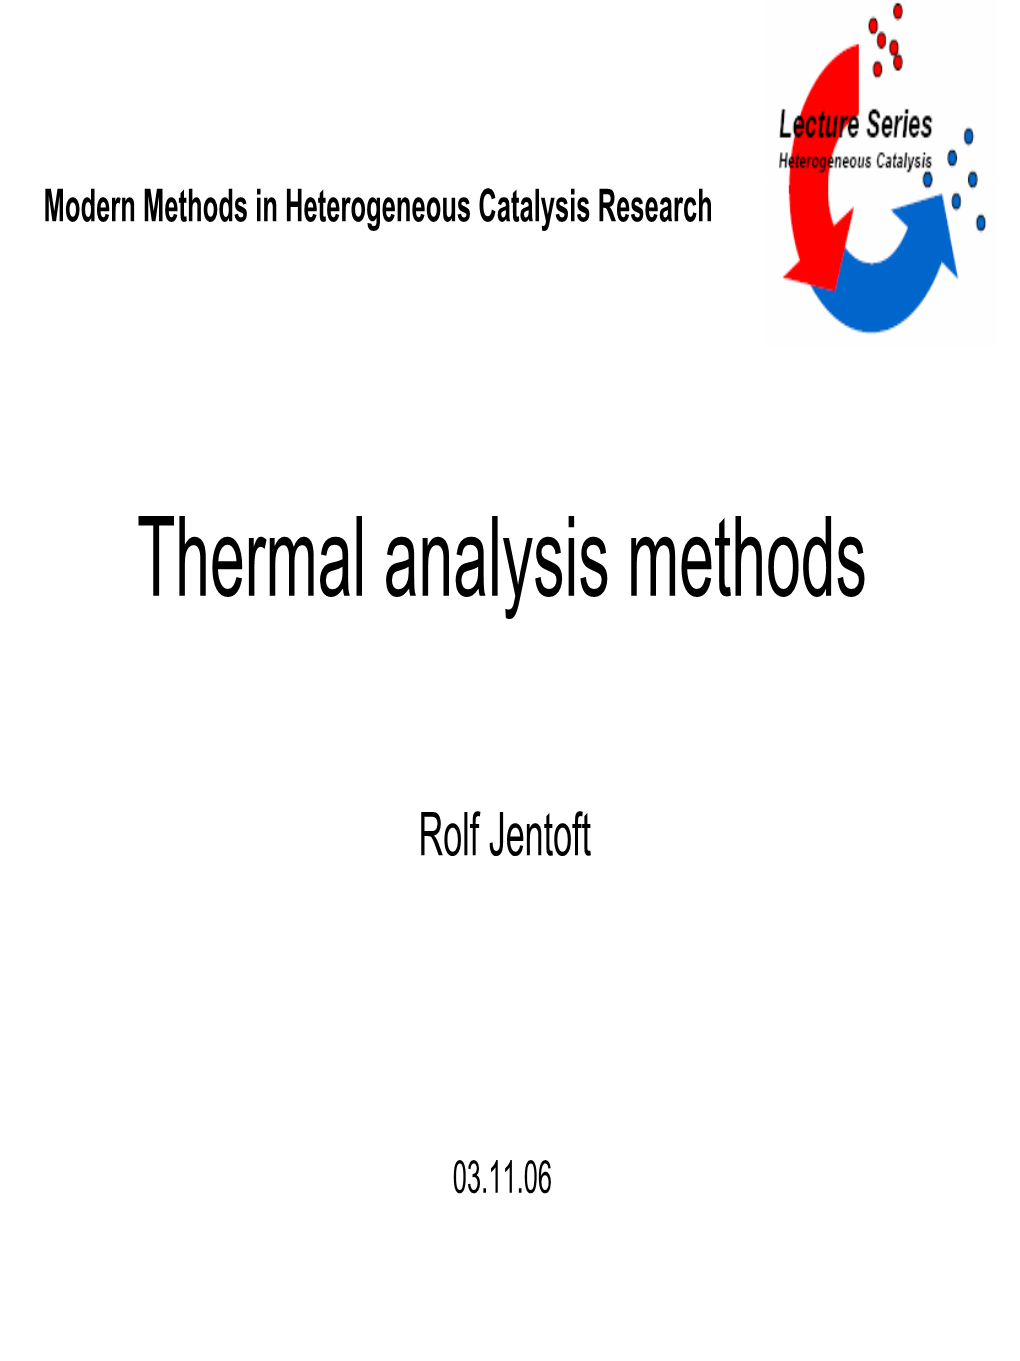 Thermal Analysis Methods